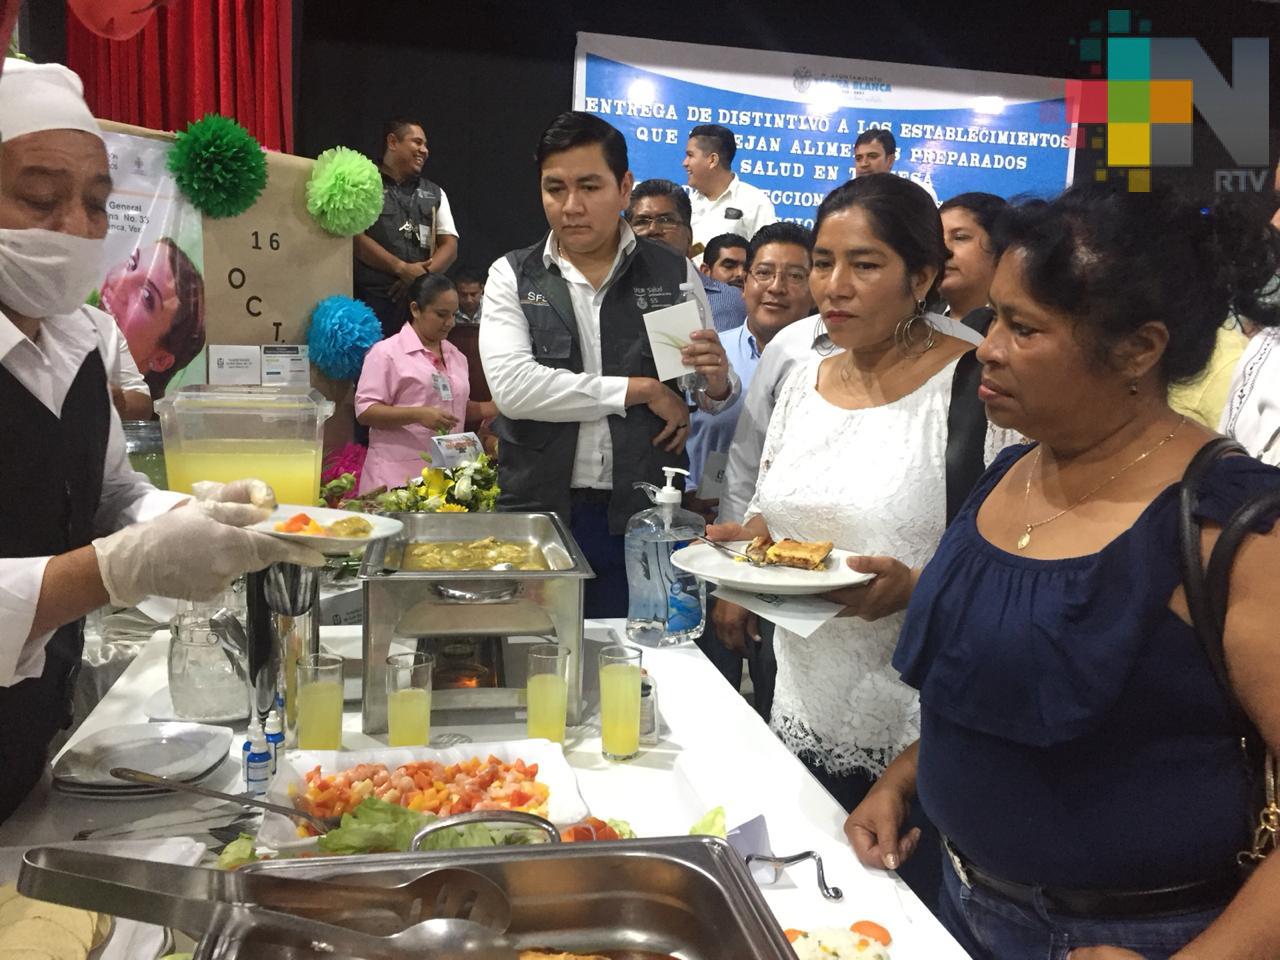 Establecimientos de comida de la cuenca del Papaloapan reciben distintivo “Salud en tu mesa”